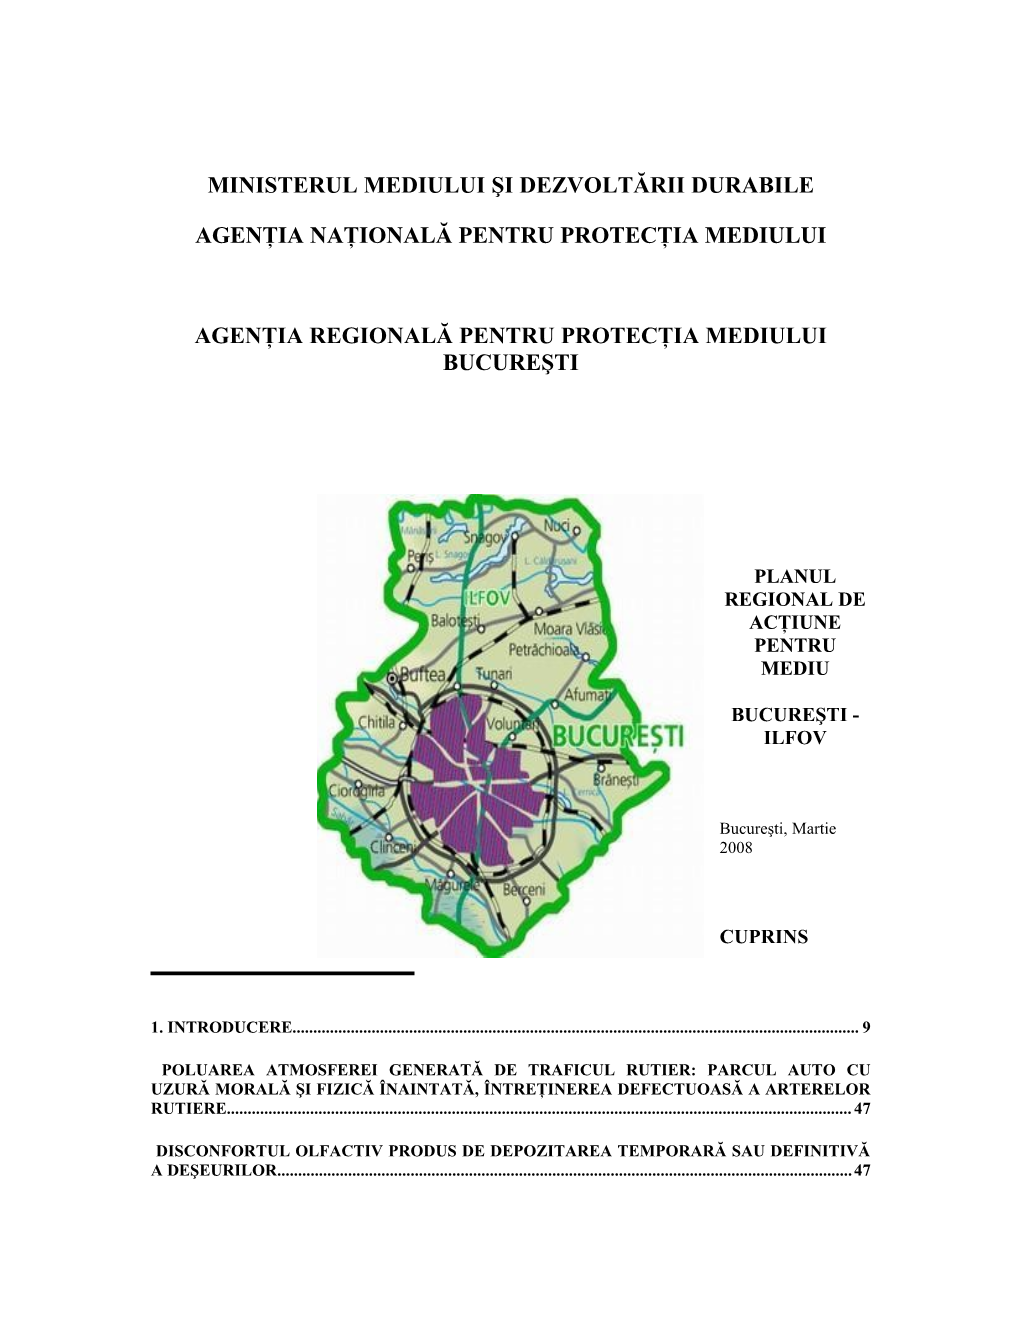 Planul Regional De Actiune Pentru Mediu Bucuresti-Ilfov